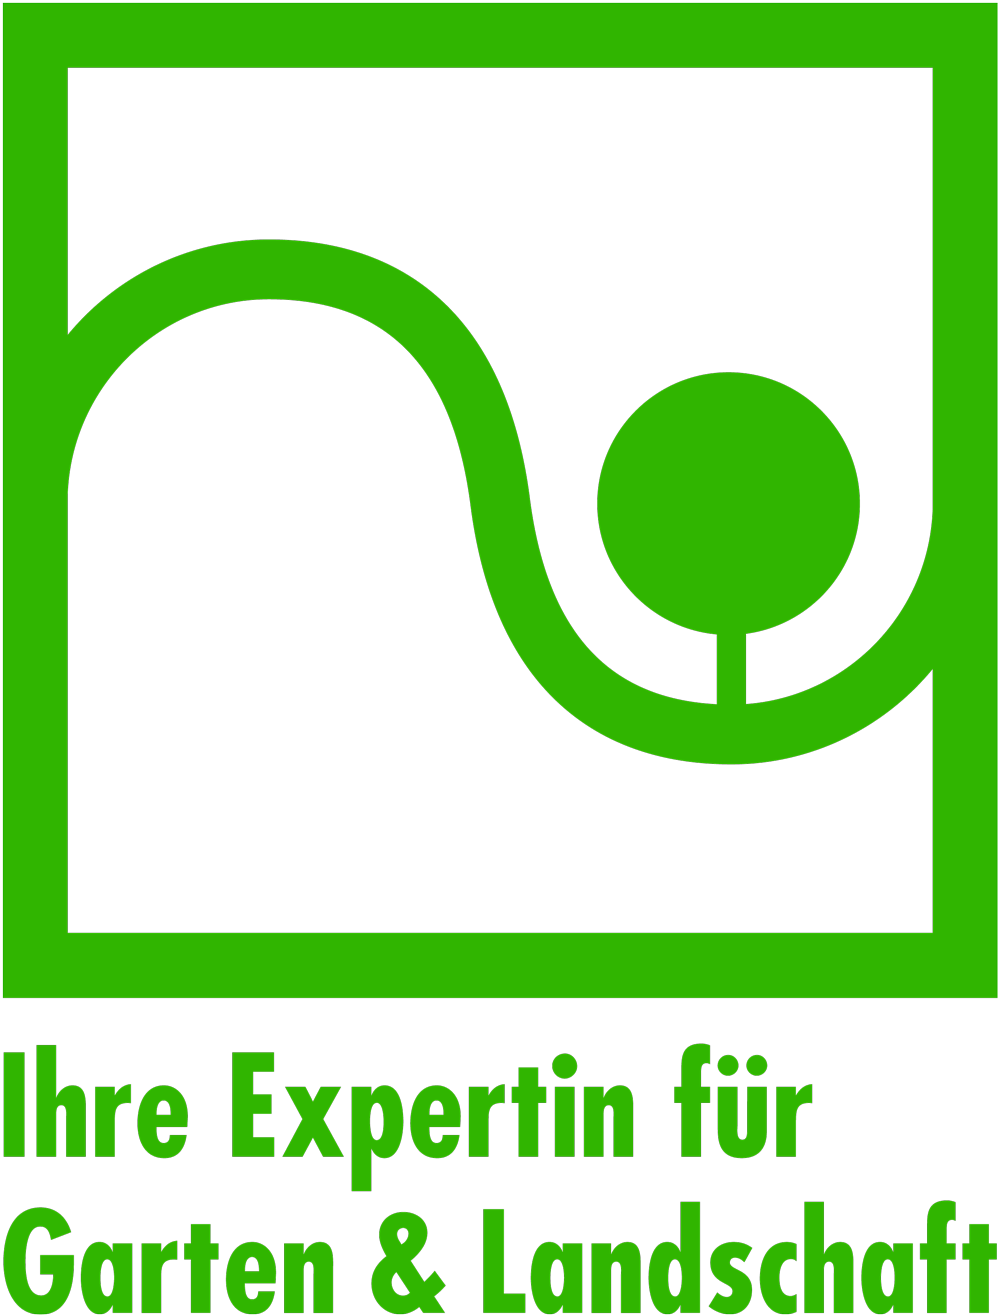 Verband Garten-, Landschafts- und Sportplatzbau NRW e.V. Logo